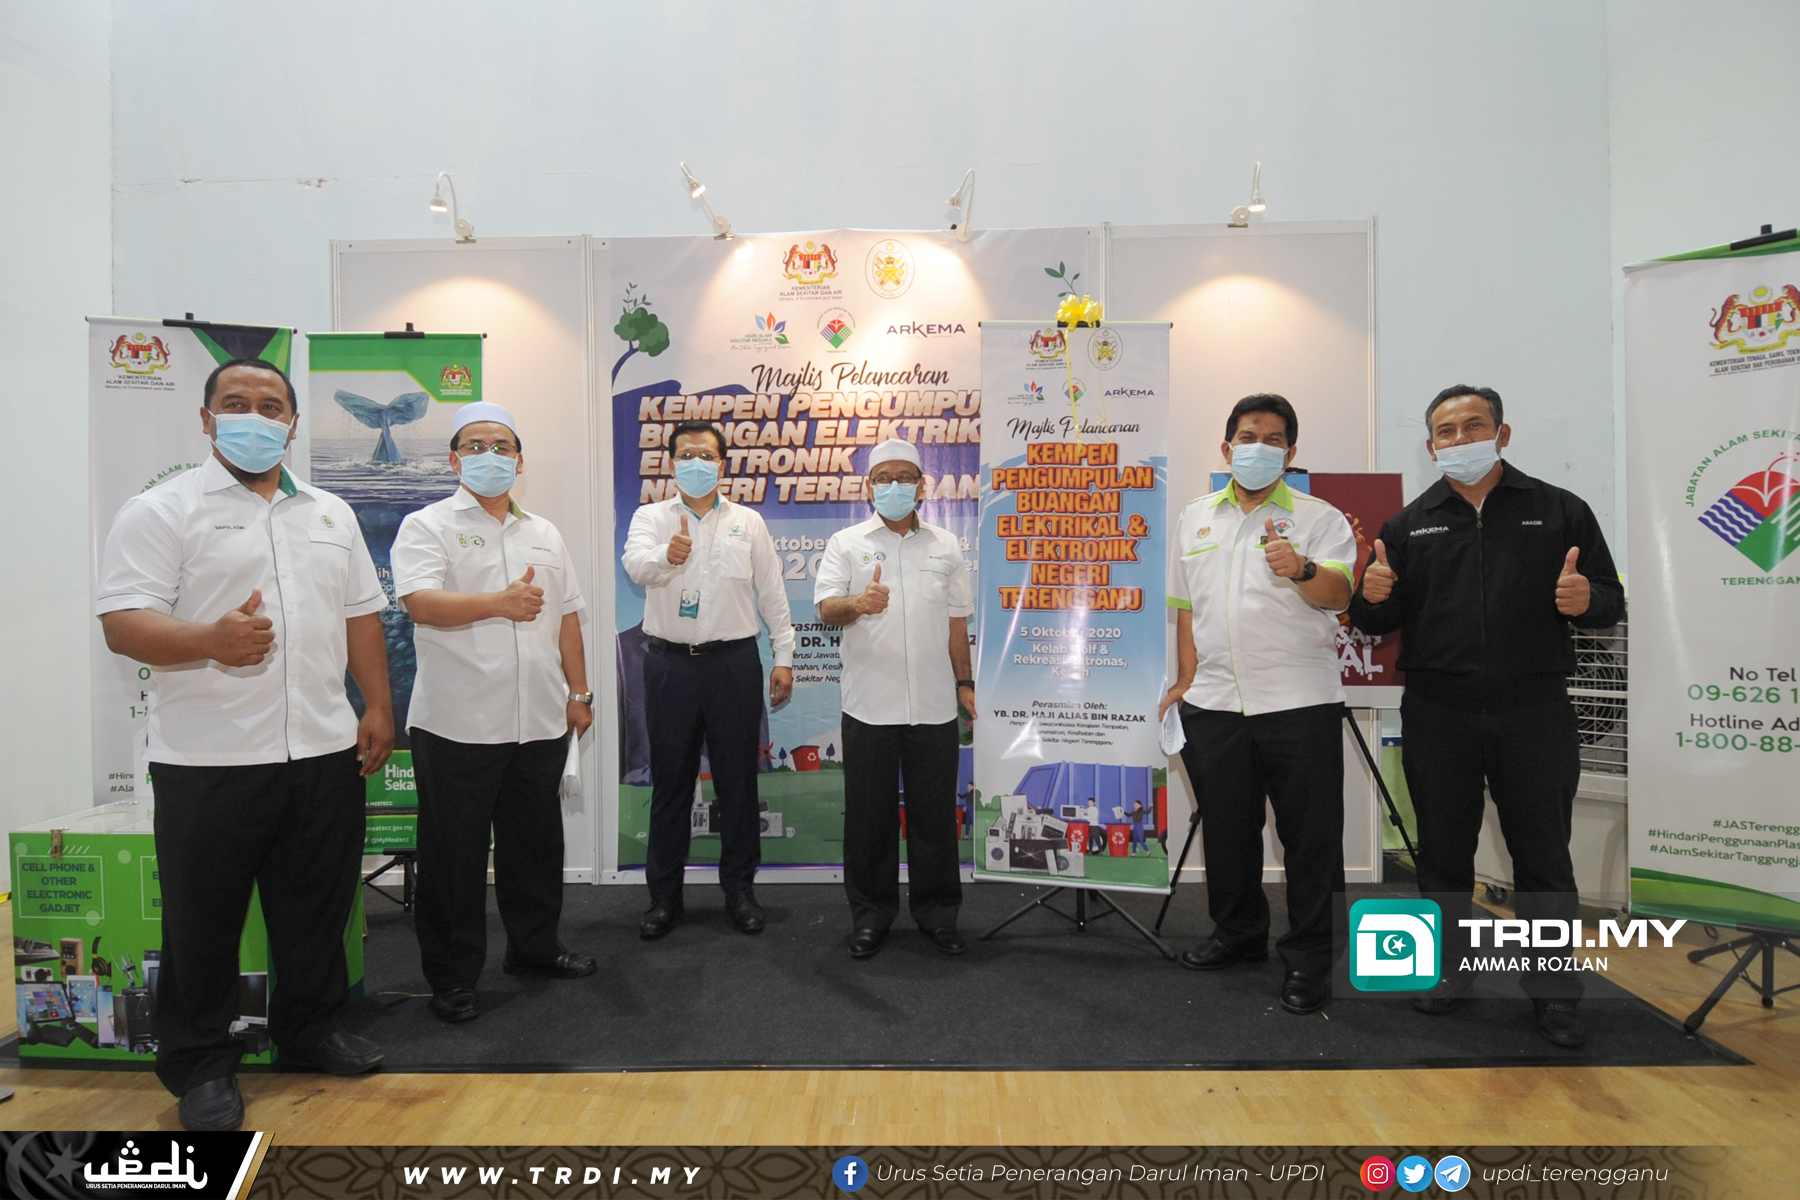 Sambutan Hari Ozon Negeri Terengganu 2020 anjuran PETRONAS dengan kerjasama Jabatan Alam Sekita (JAS) Terengganu